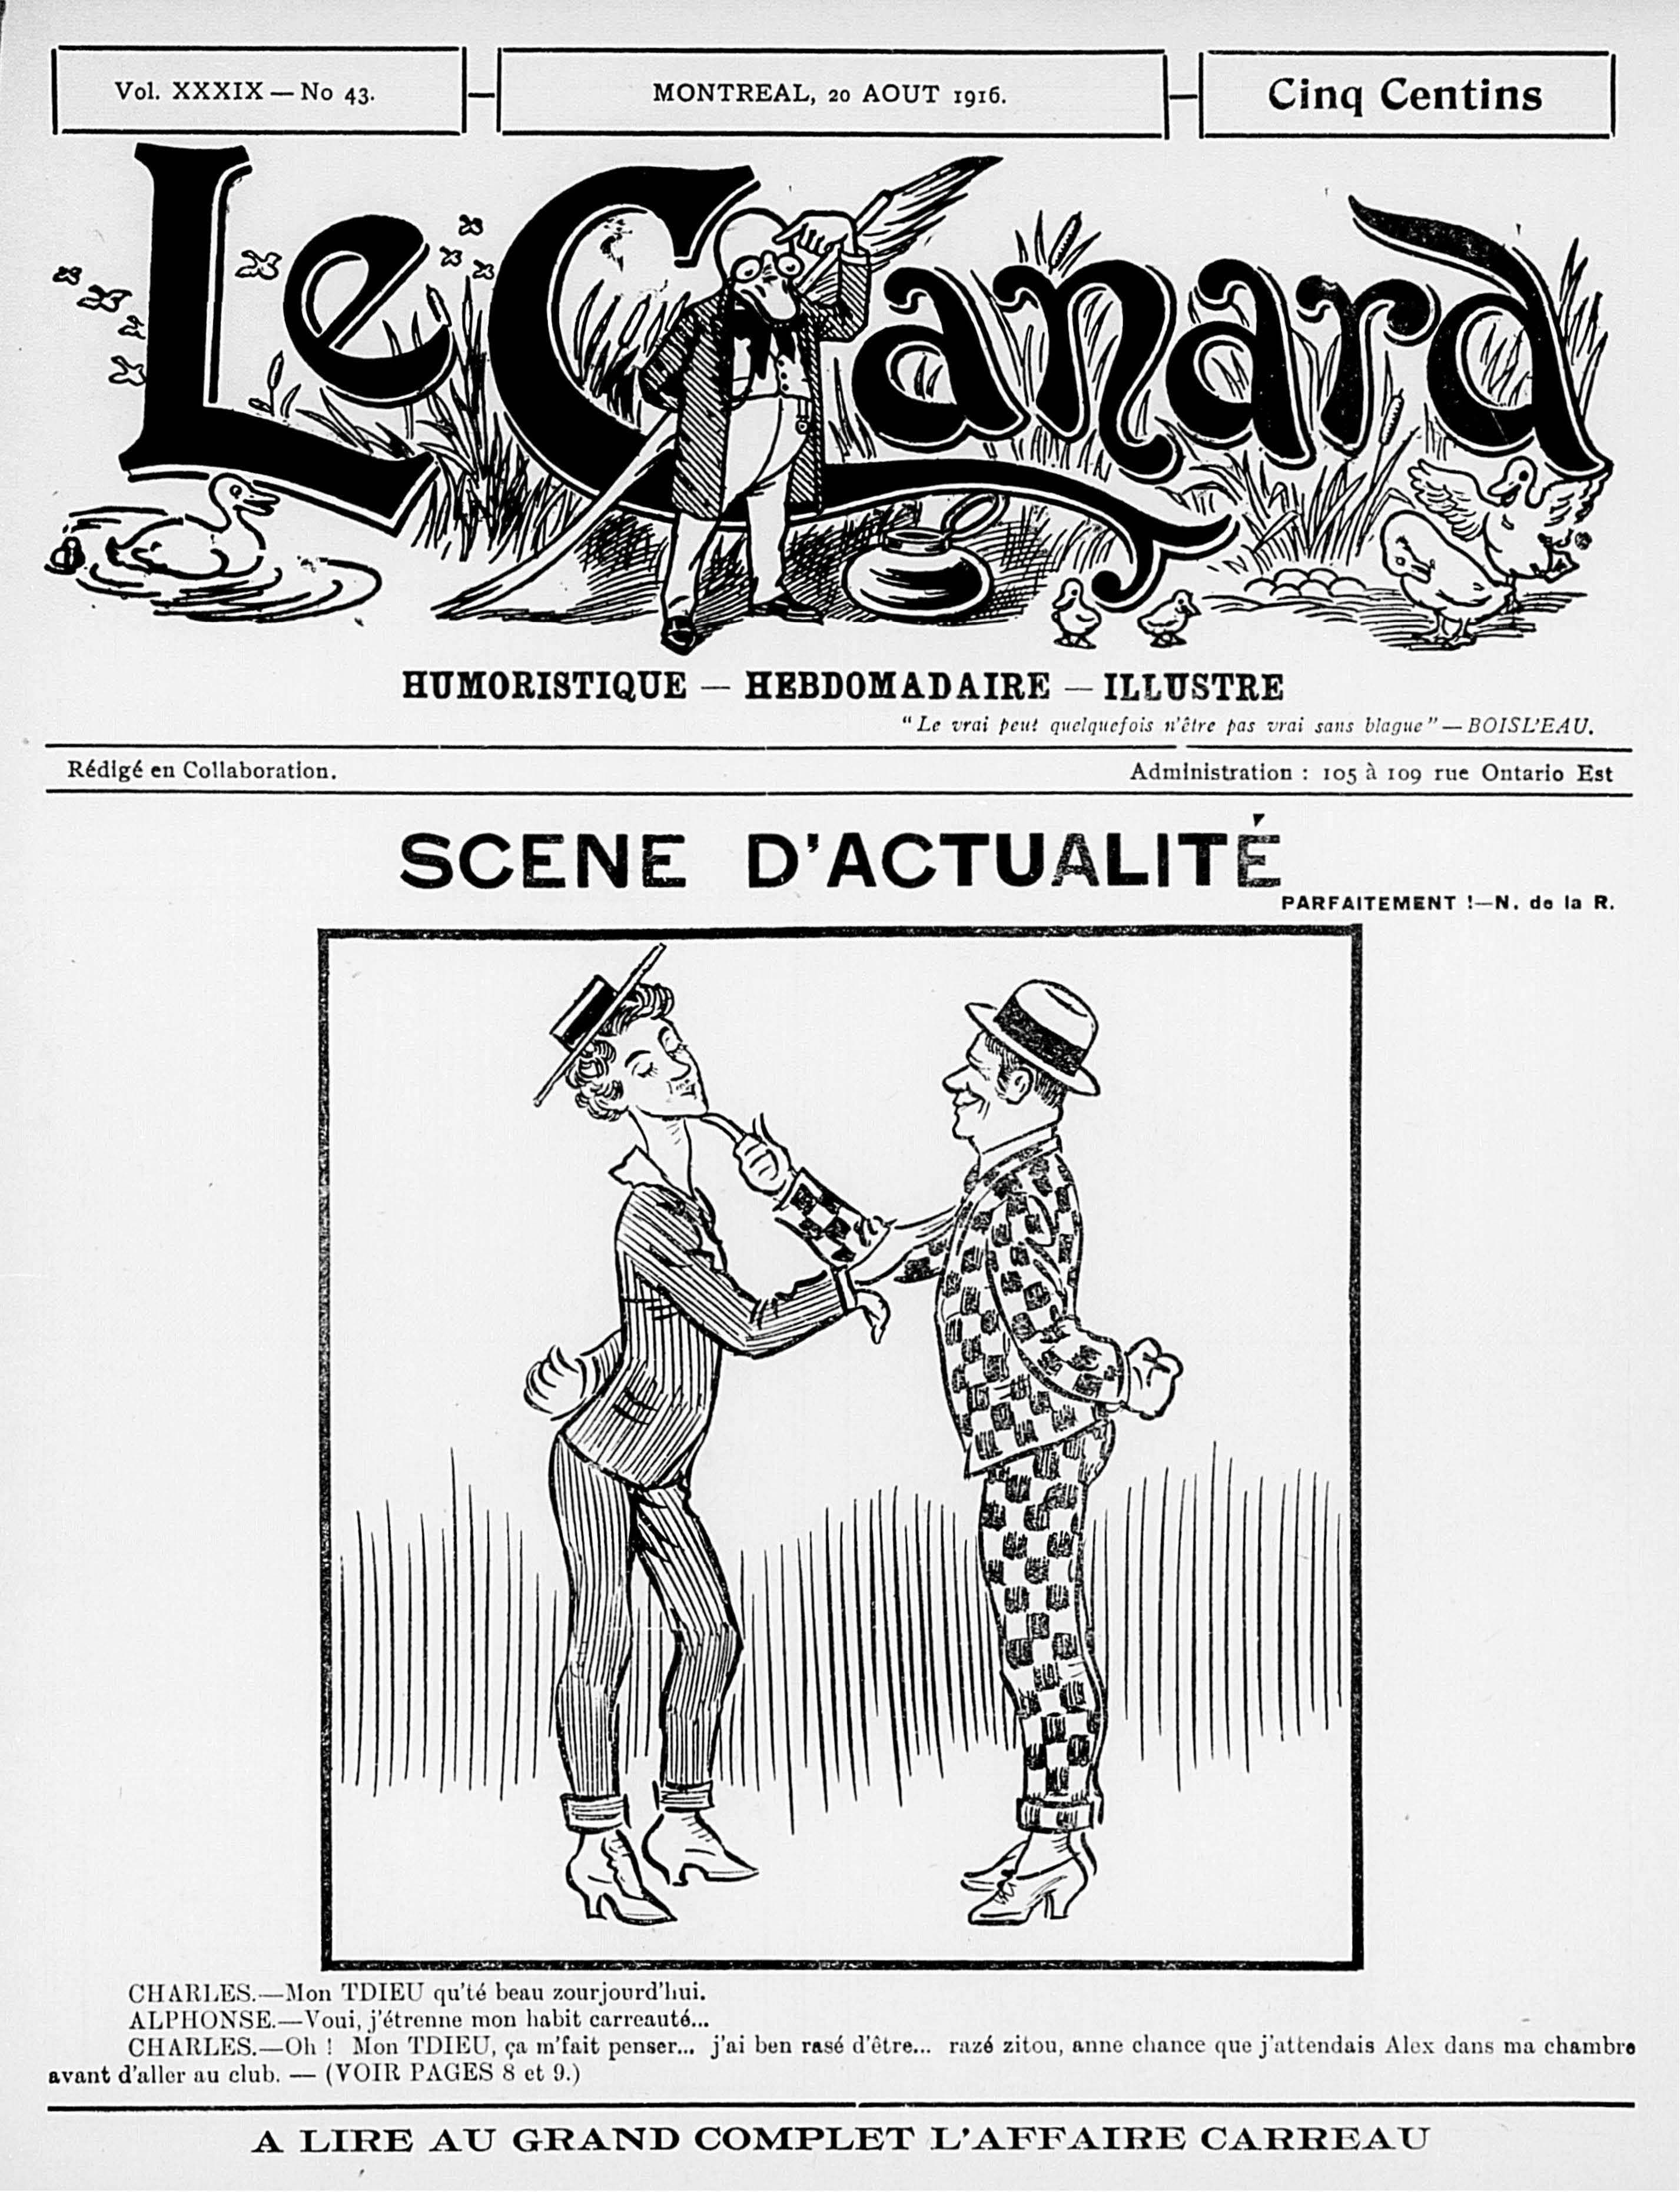 Une du journal satirique Le Canard en 1916 suite à l’affaire Carreau